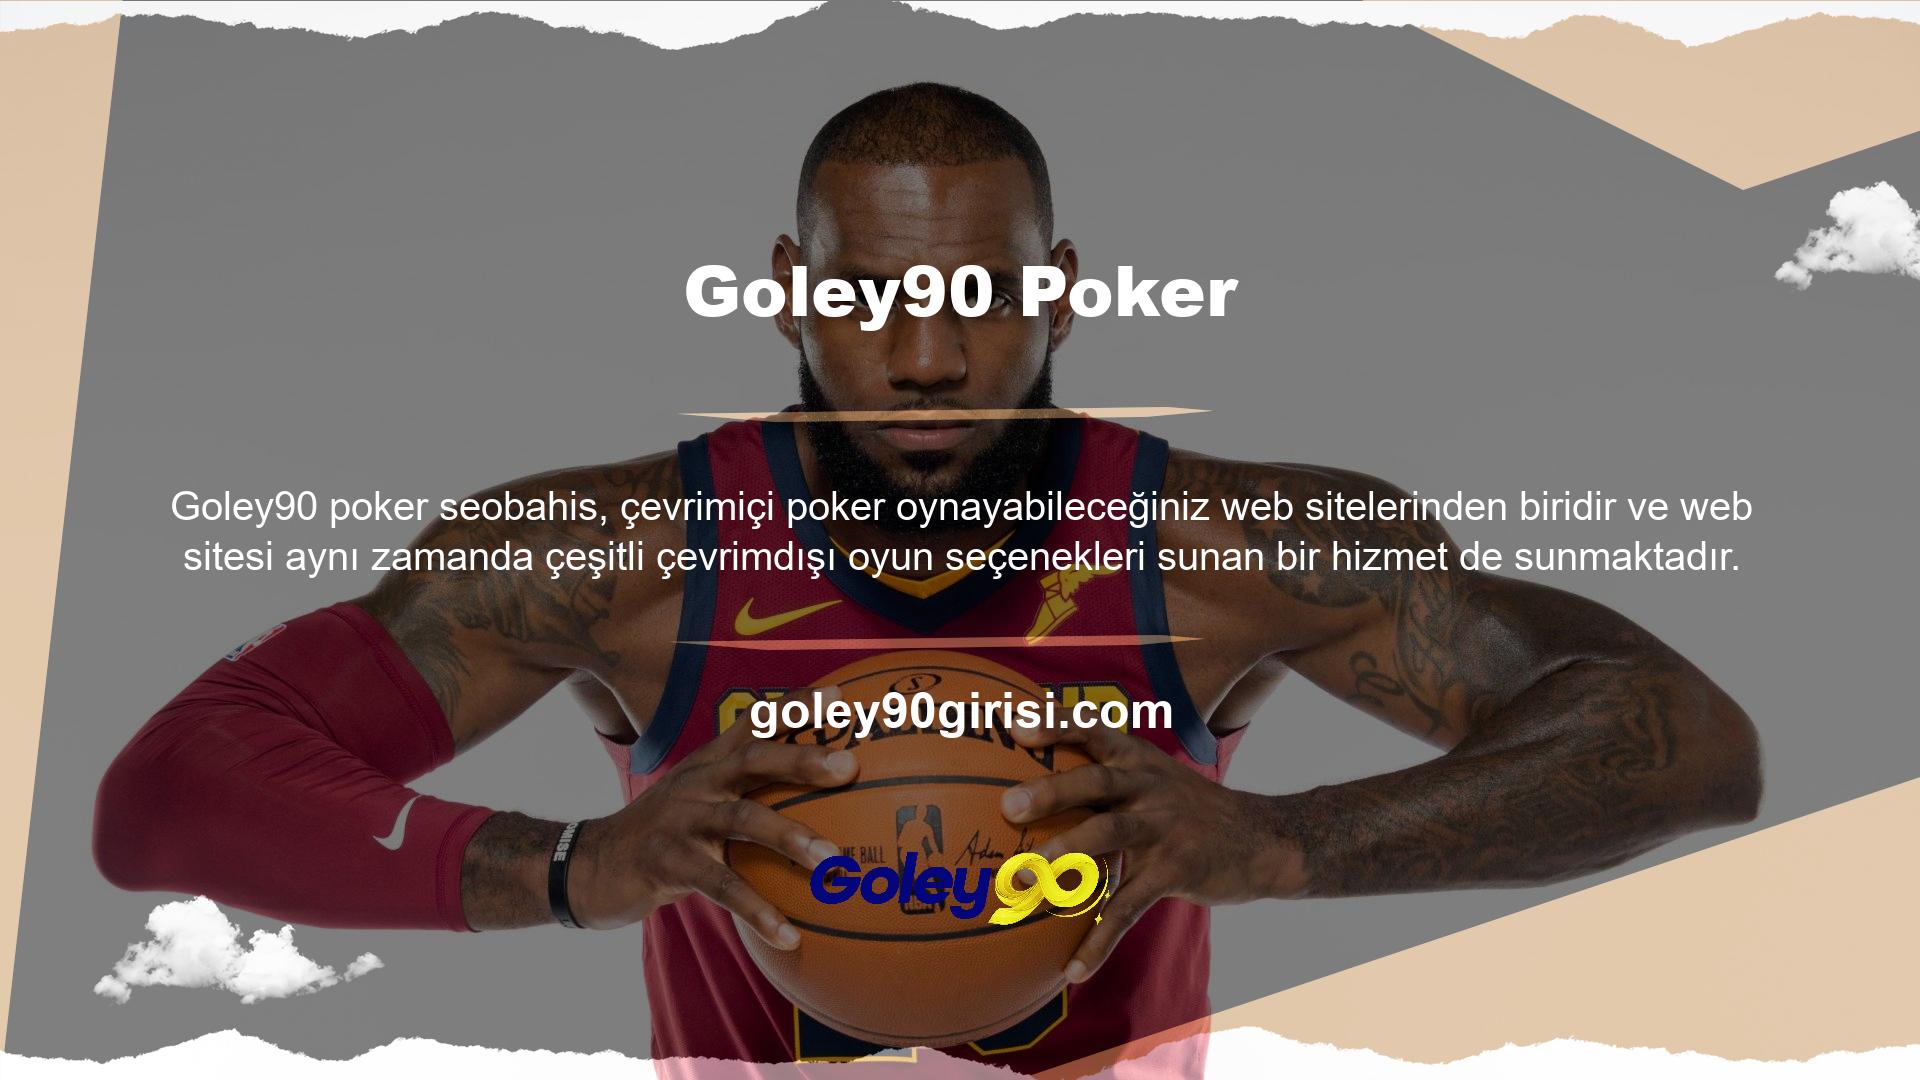 Hayatta değil; PC oyunlarını çevrimdışı oynamak istiyorsanız web sitesinin Goley90 Casino kategorisini ziyaret edin